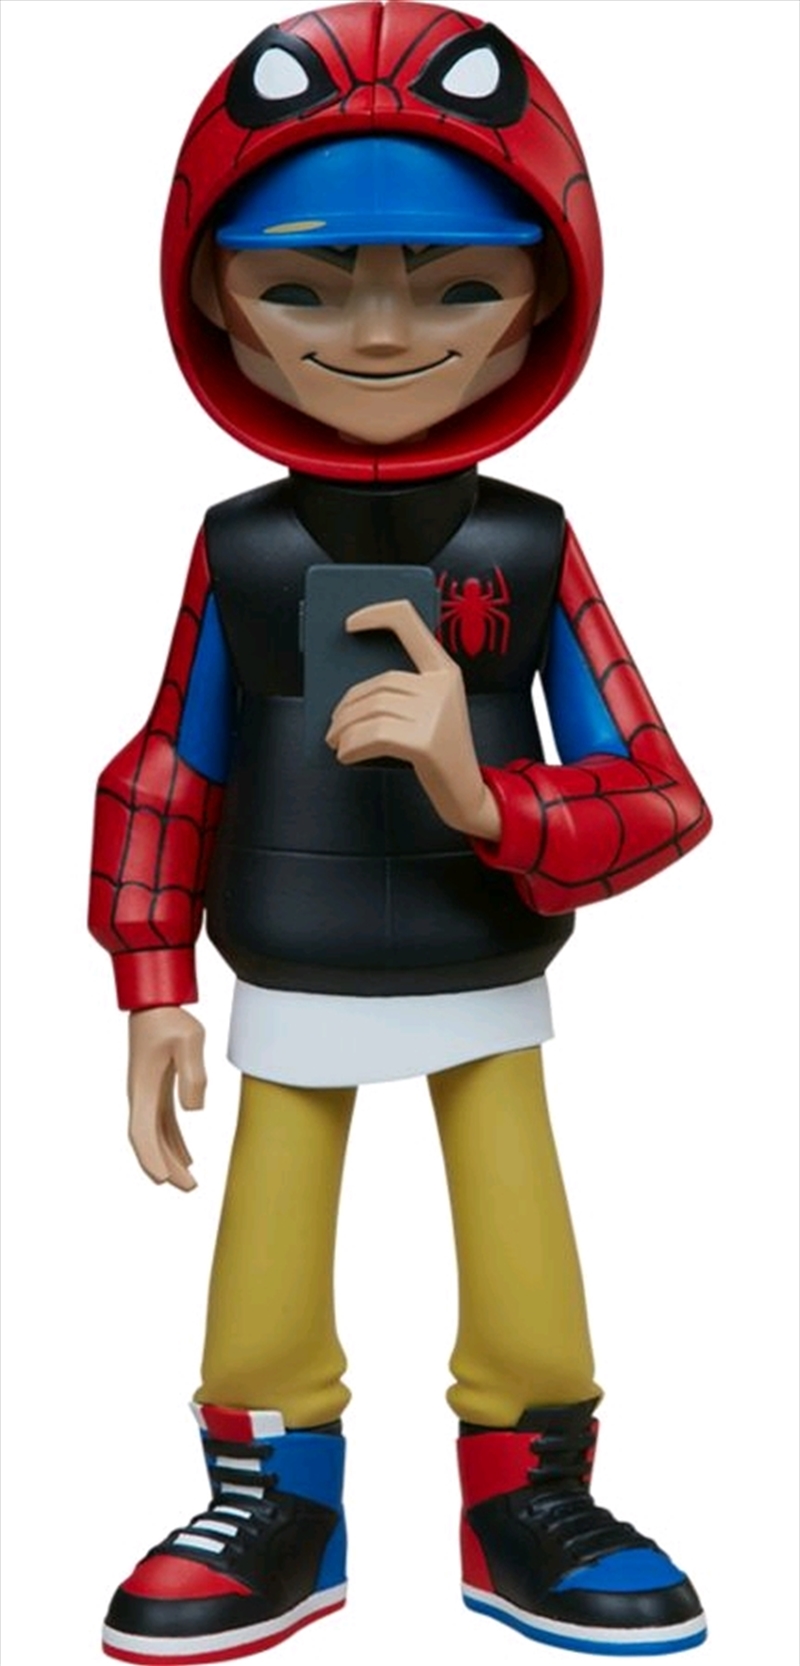 Spider-Man - Spider-Man Designer Toy/Product Detail/Figurines